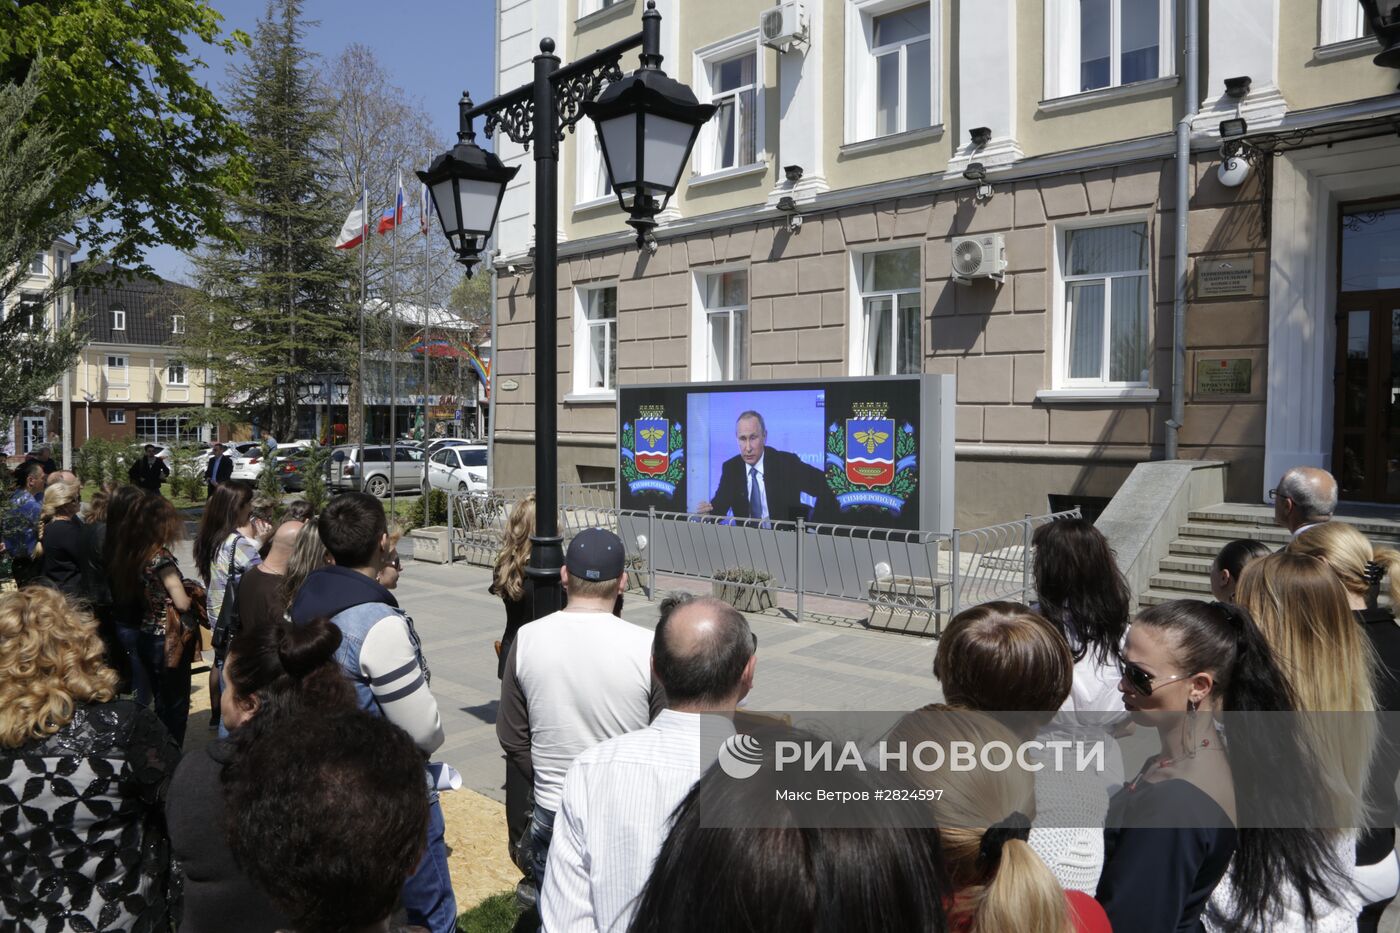 Трансляция "Прямой линии с Владимиром Путиным"